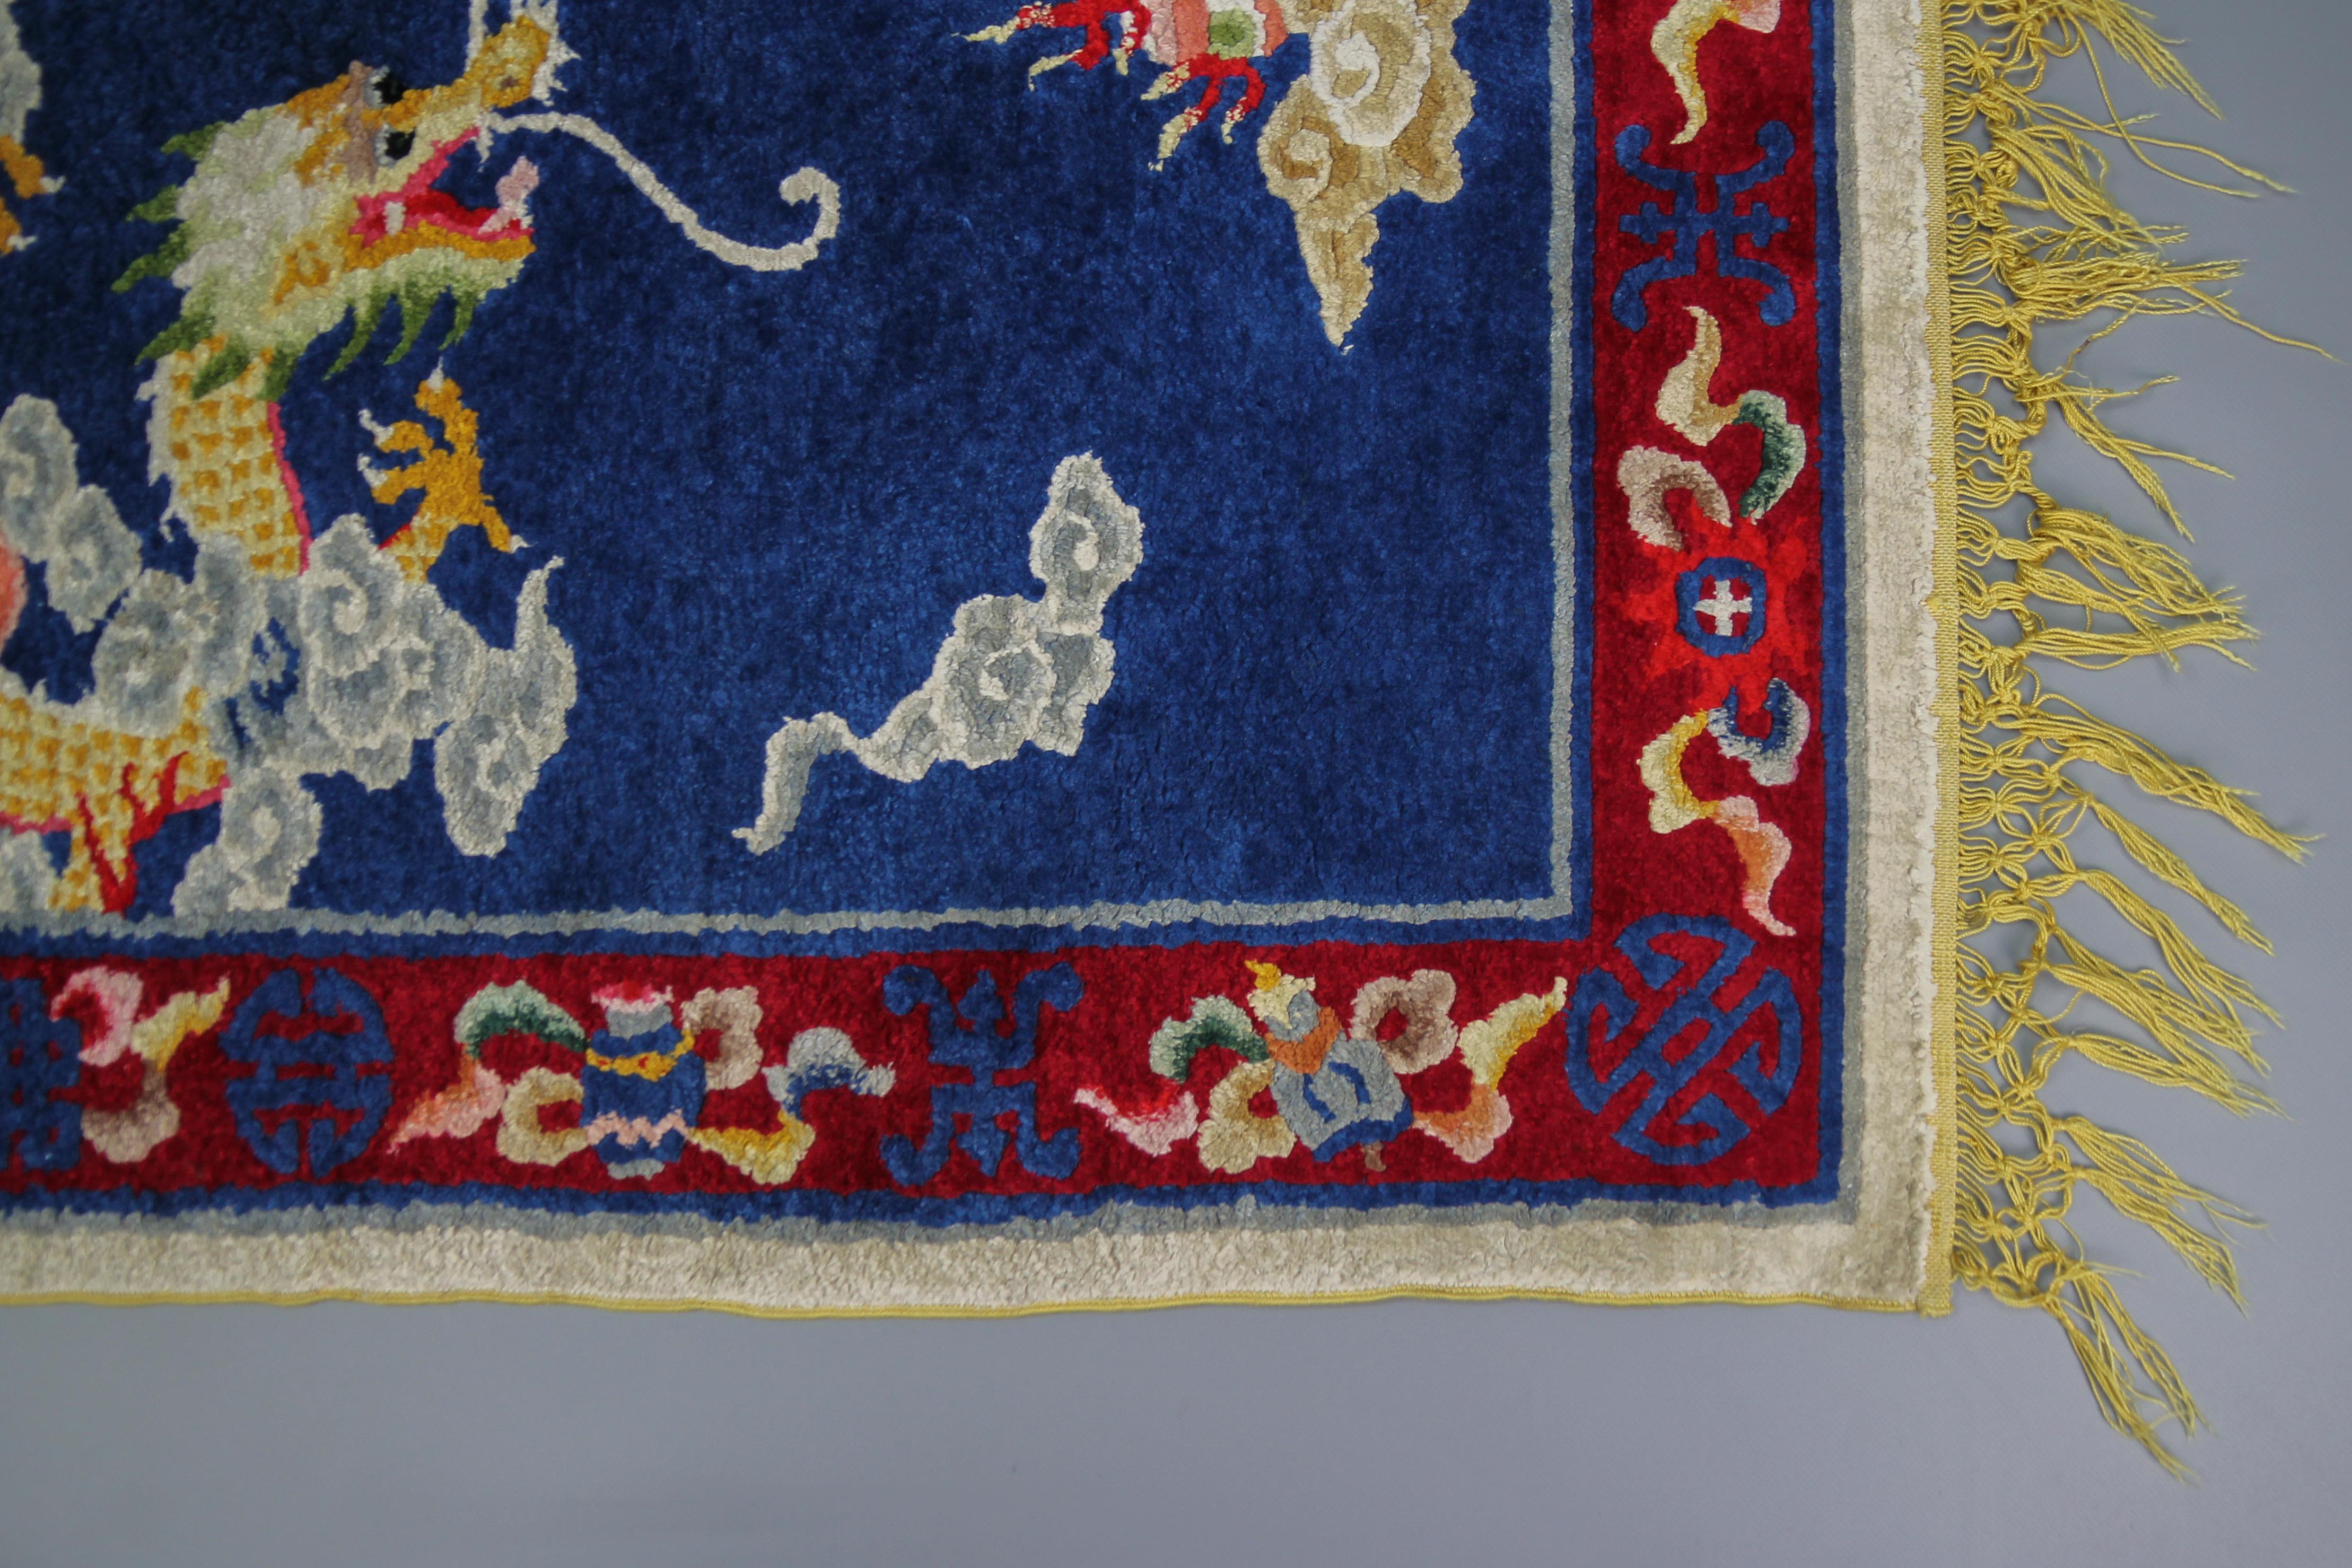 Handgefertigter chinesischer Seidenteppich aus der Mitte des 20. Jahrhunderts mit einem Drachen, umgeben von Wolken und Ornamenten in Blau, Rot und Gelb.
Abmessungen: 122 cm / 48 in x 78 cm / 30,7 in.